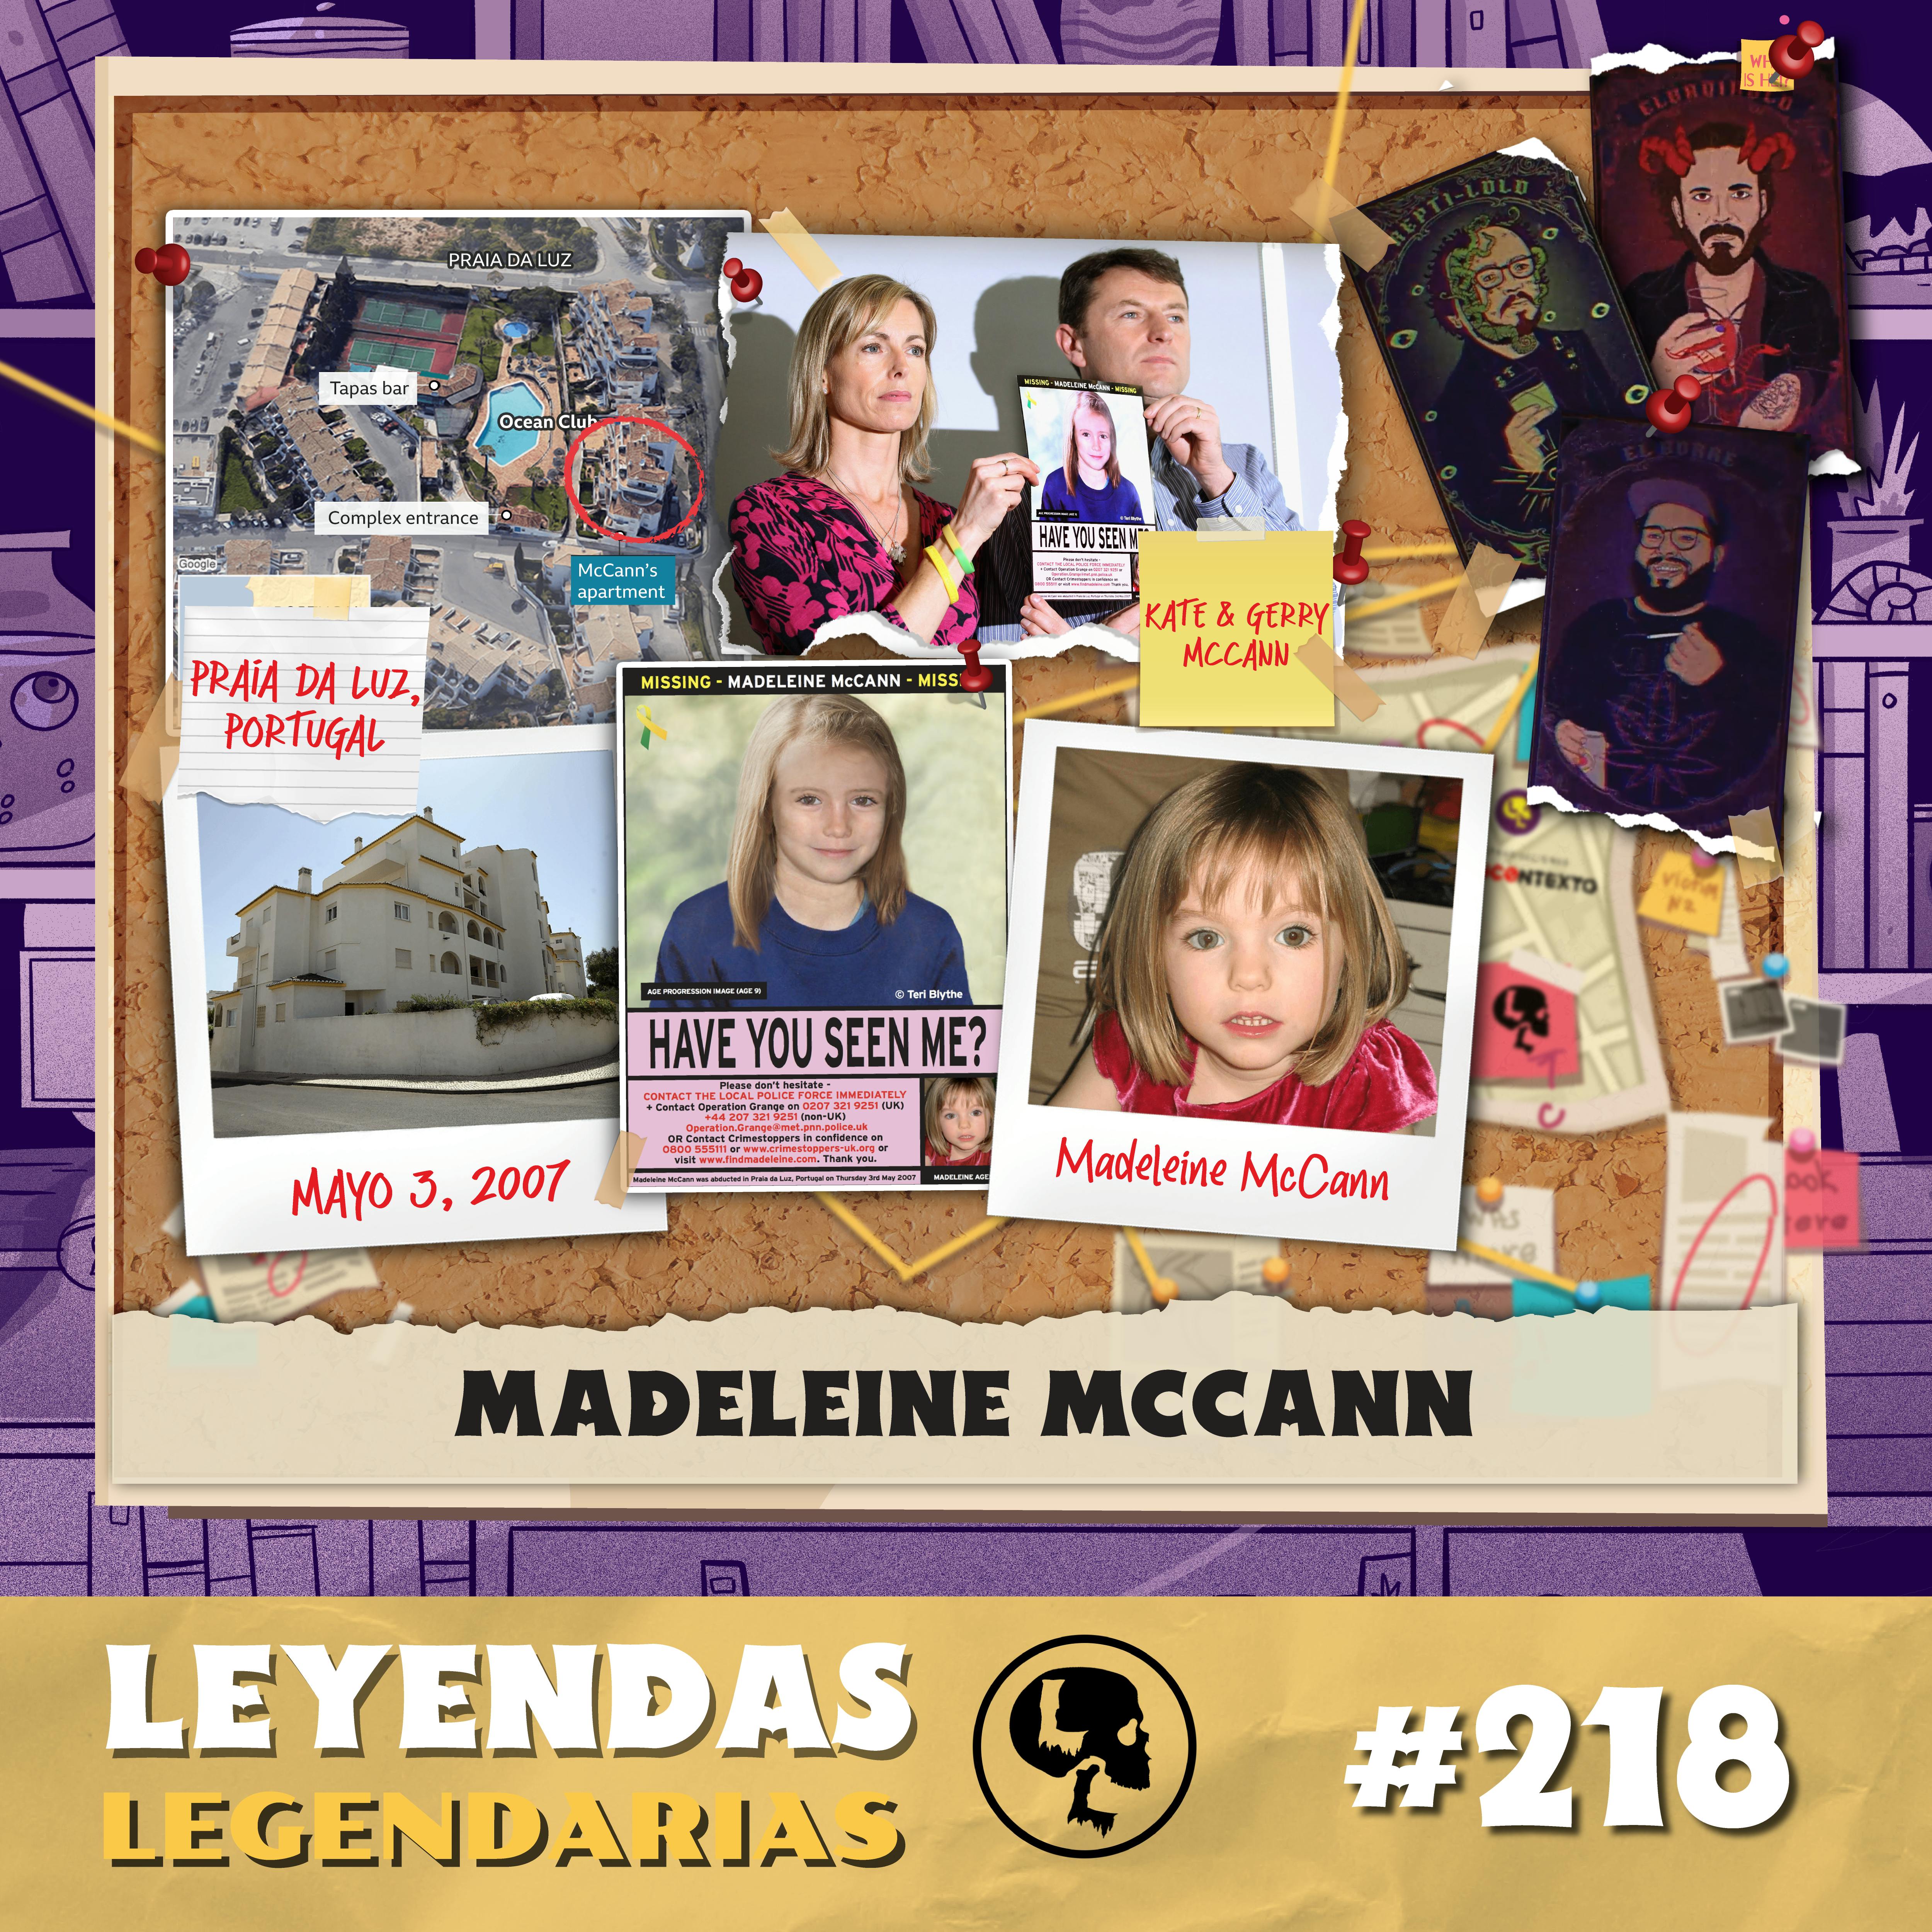 E218: Madeleine McCann